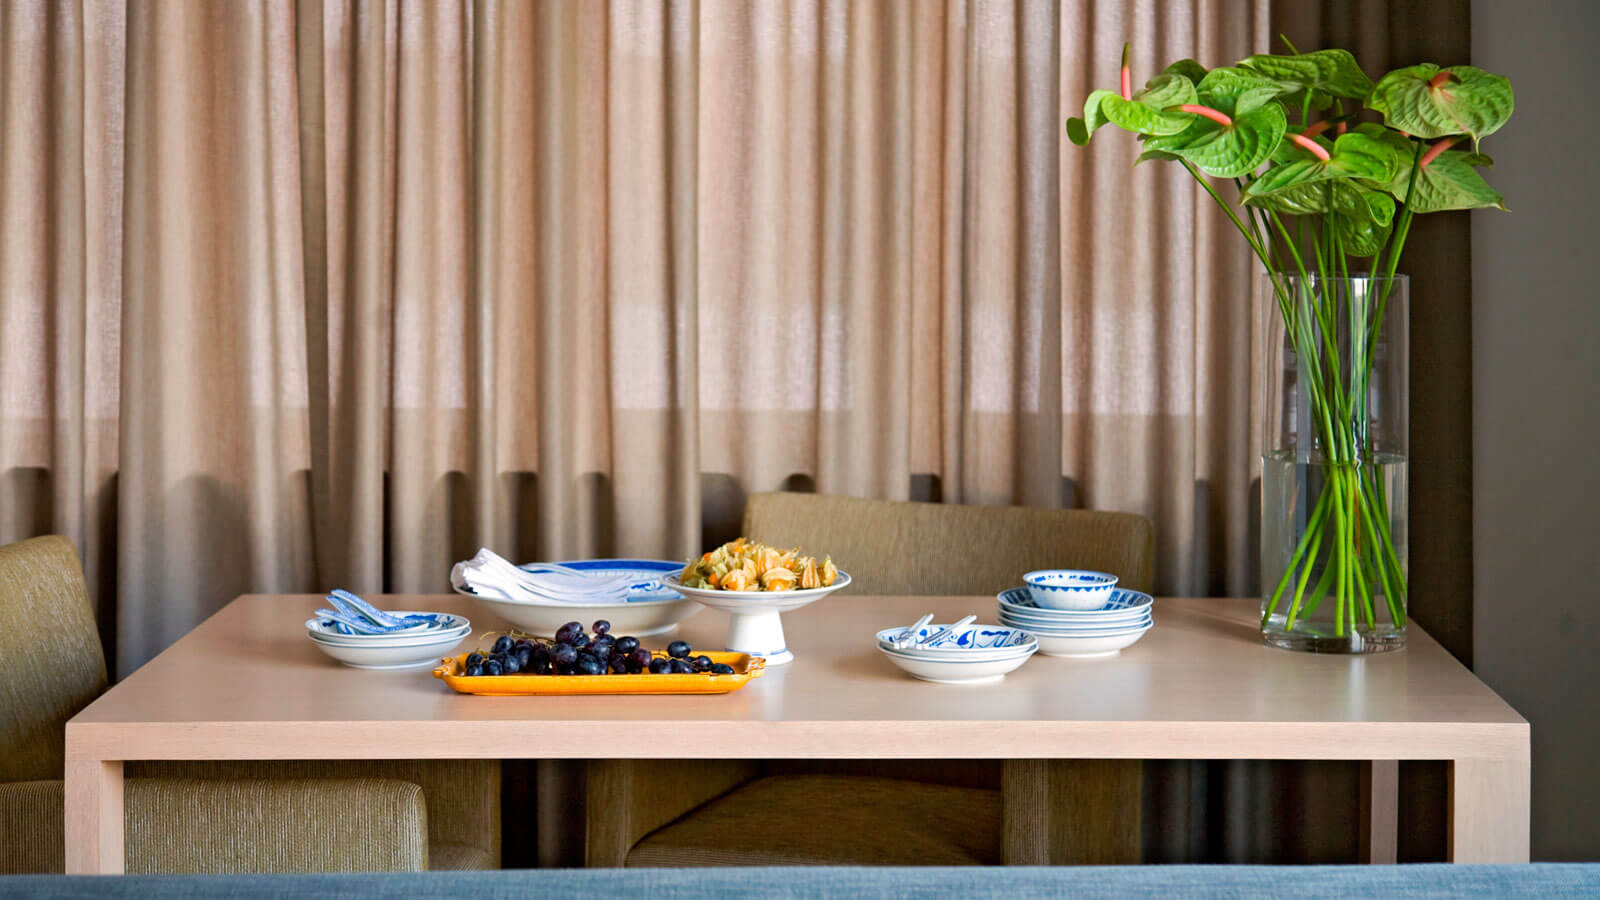 โต๊ะรับประทานอาหาร - อพาร์ตเมนท์ 1 ห้องนอน ลักชูรี่ - ชามา จิมซาจุ่ย ฮ่องกง เซอร์วิส อพาร์ตเมนท์ - ชามา จิมซาจุ่ย ฮ่องกง